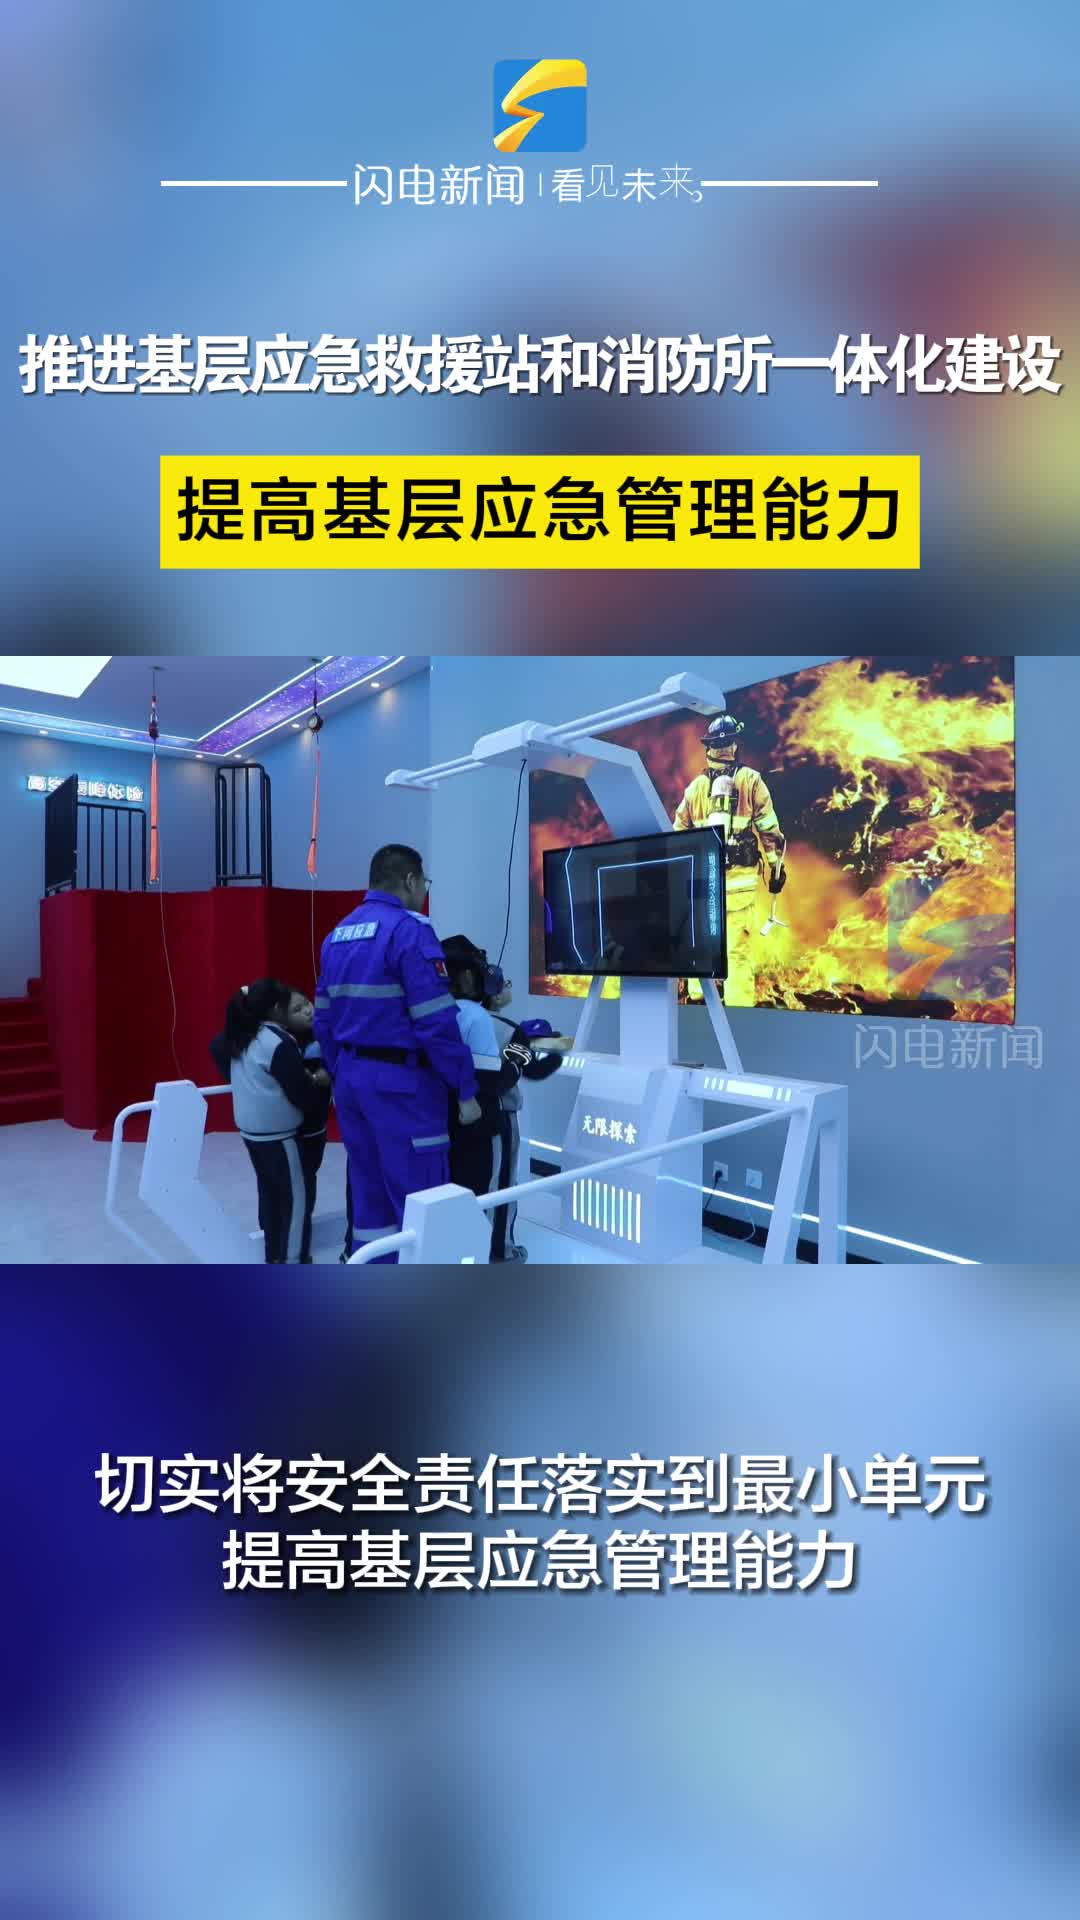 滨州沾化：推进基层应急救援站和消防所一体化建设 提高基层应急管理能力